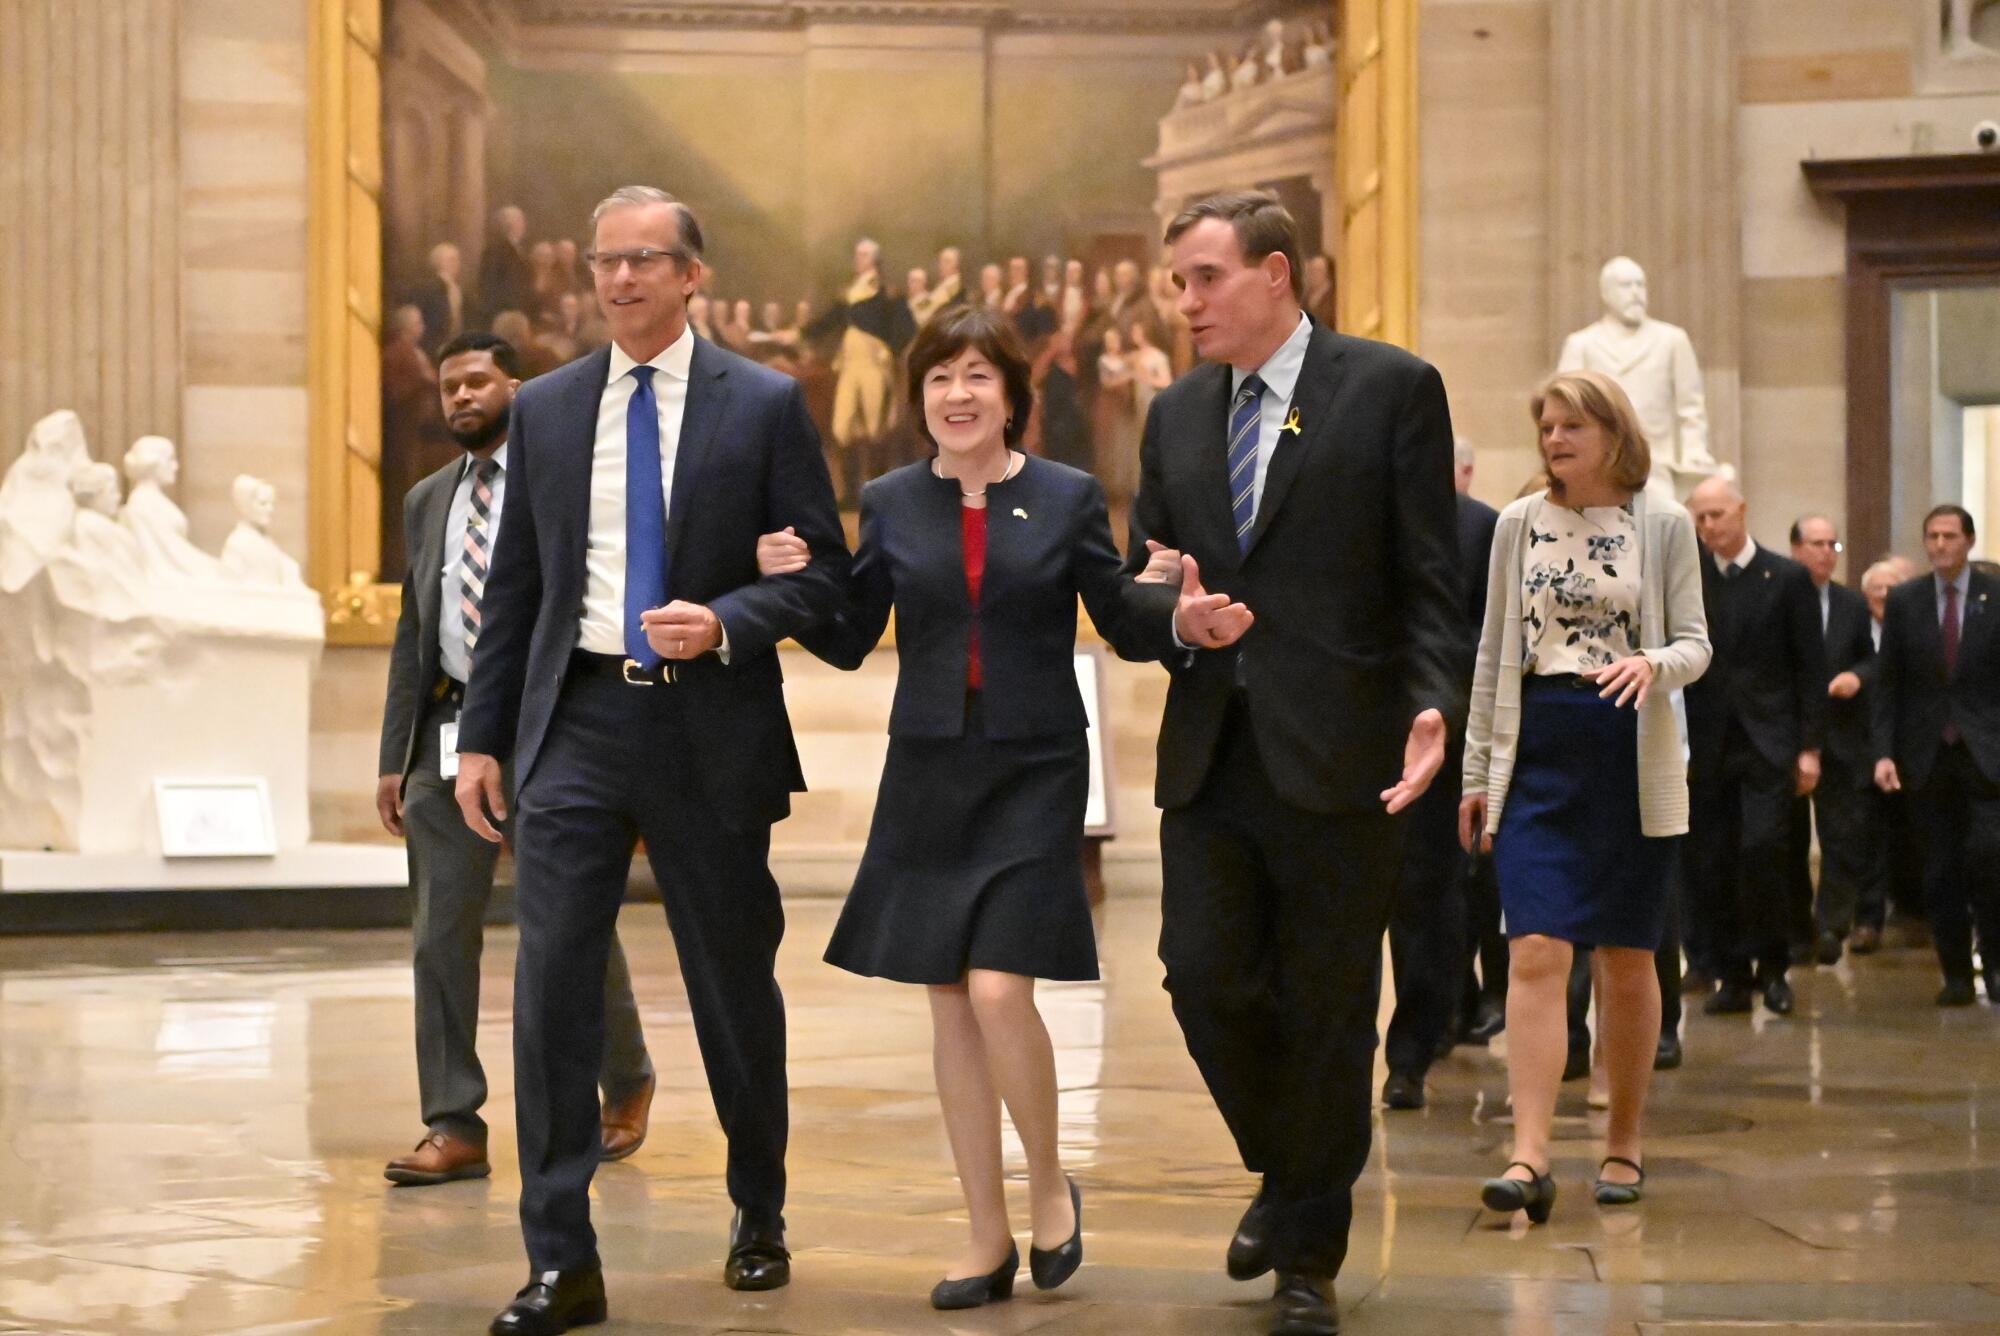 Senators in the U.S. Capitol.